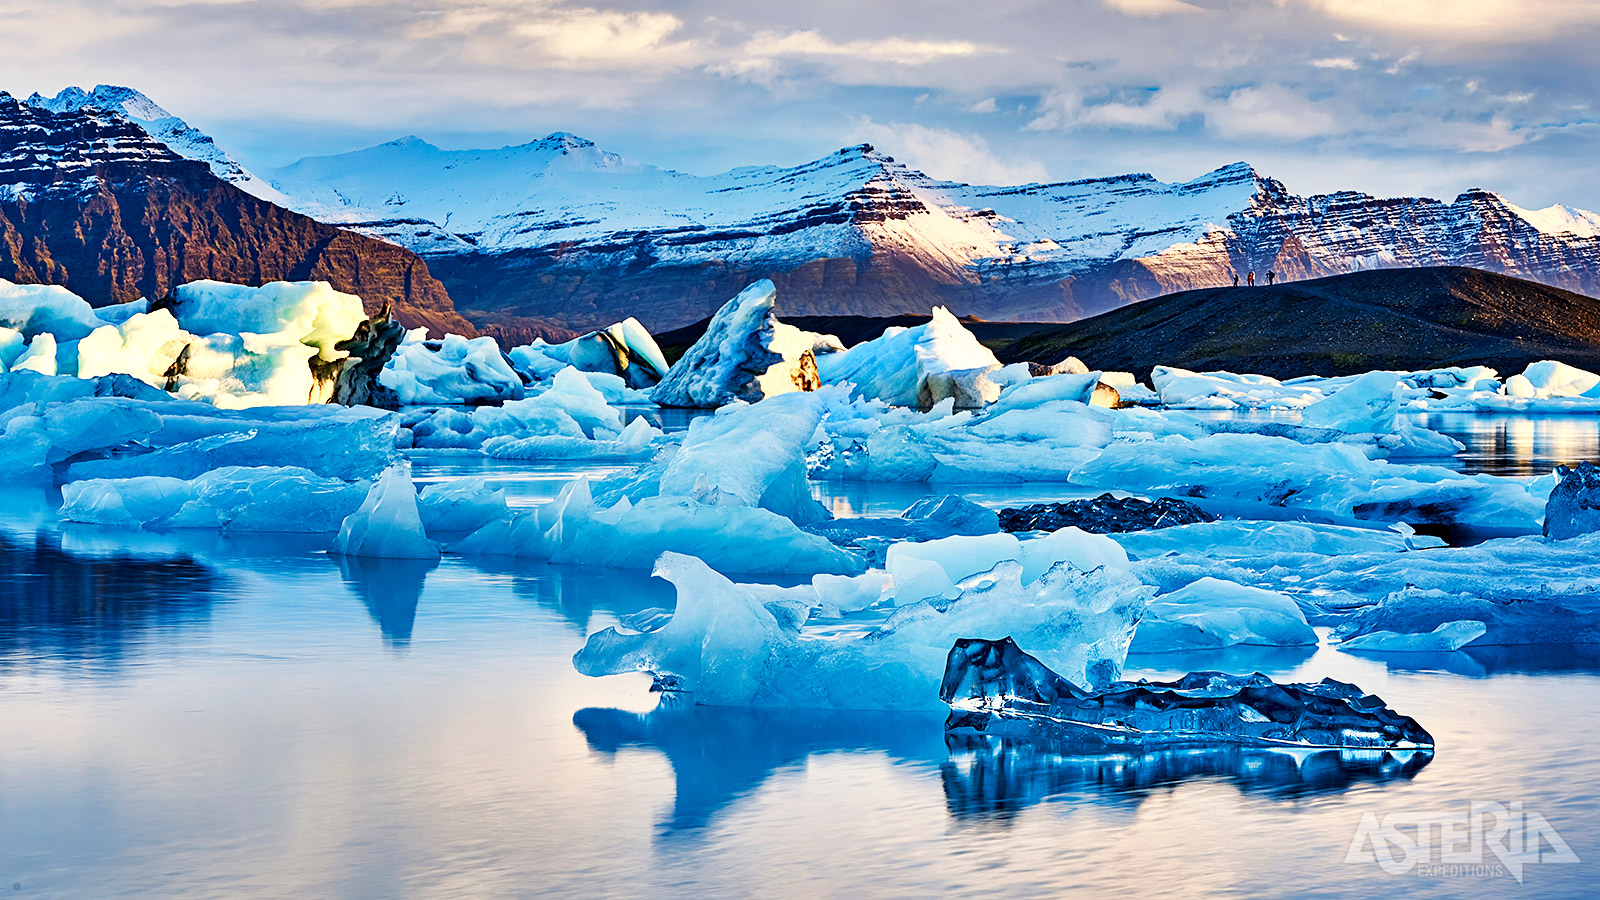 Het fotogenieke Jökulsárlón-meer staat bekend voor zijn imposante ijsschotsen van de Vatnajökull-gletsjer